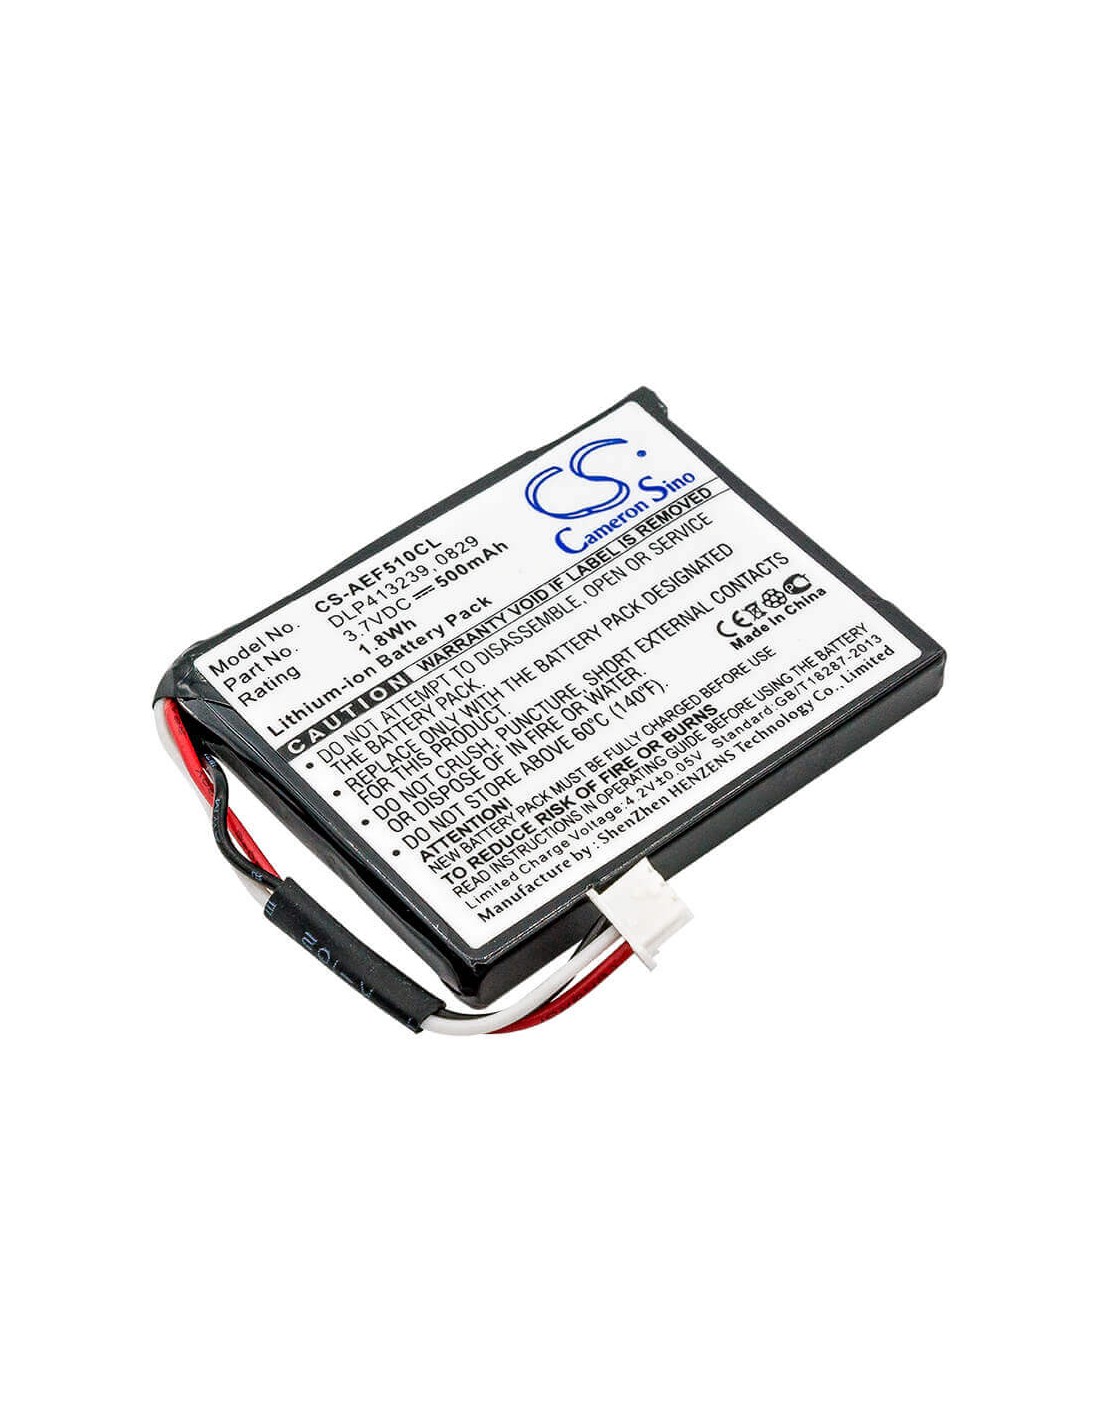 Battery for Texet, Tx-d7950 3.7V, 500mAh - 1.85Wh